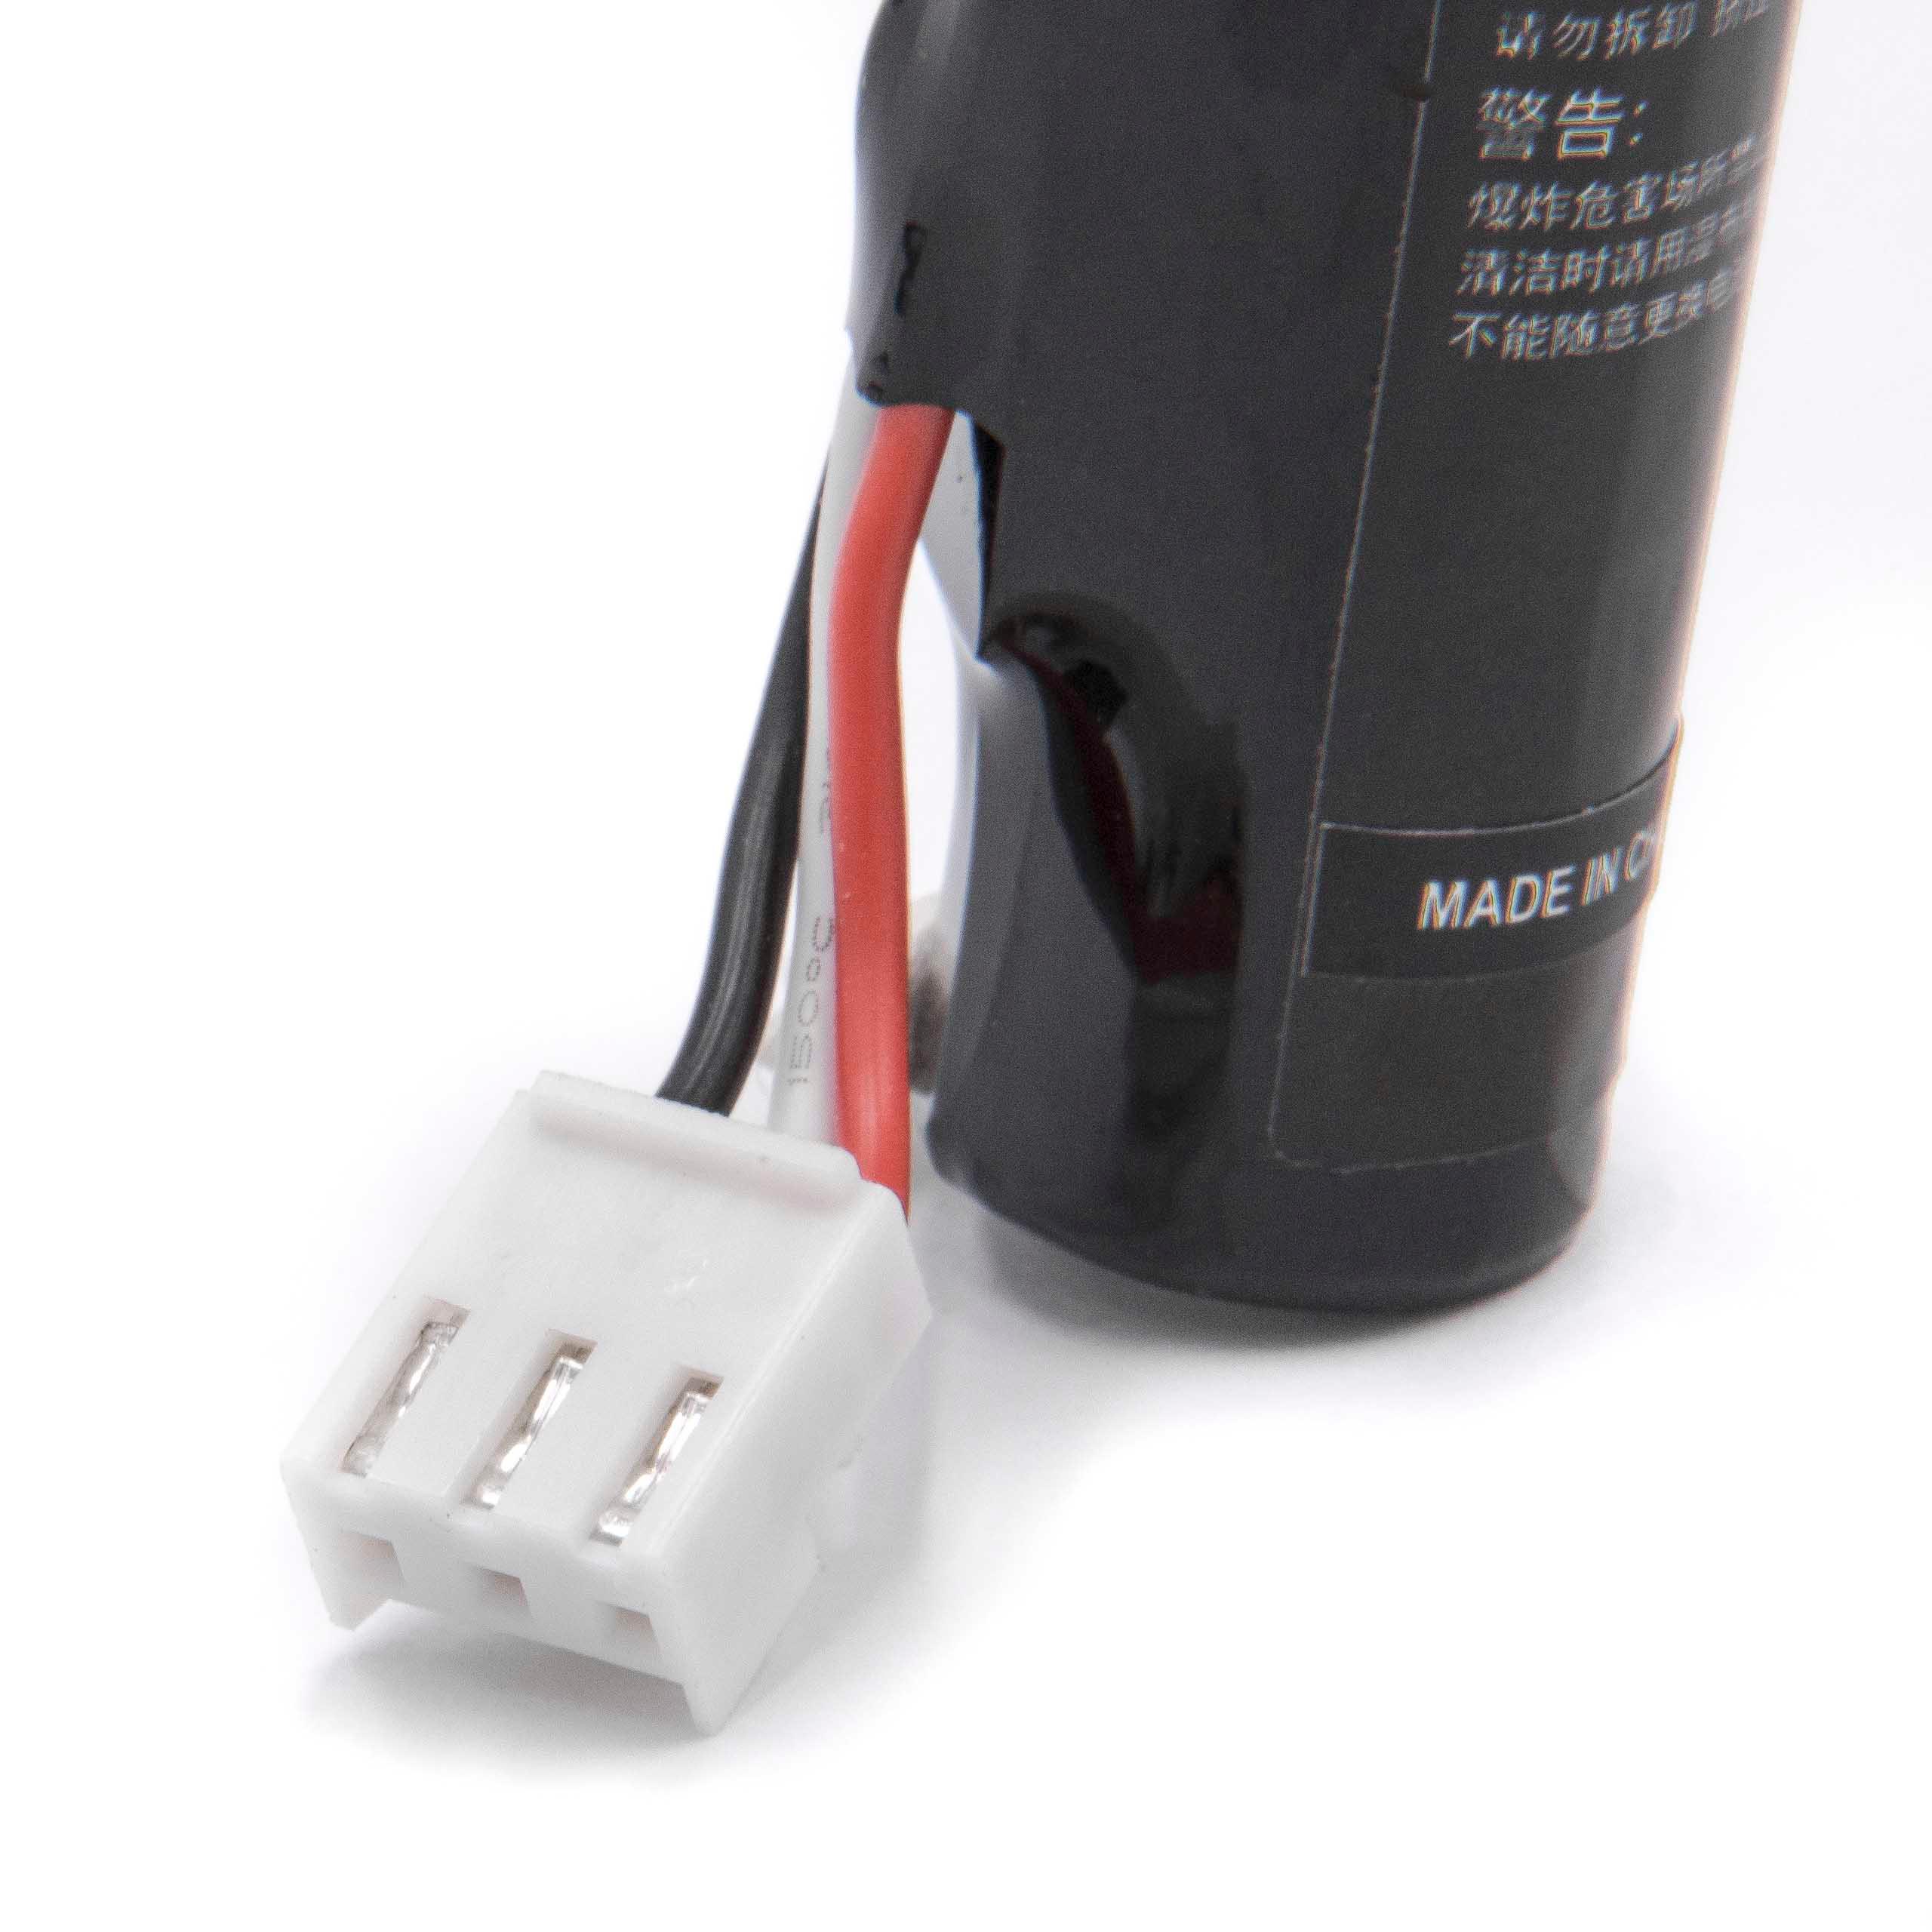 Batterie remplace Aisino IS803 pour scanner de code-barre - 2200mAh 3,7V Li-ion